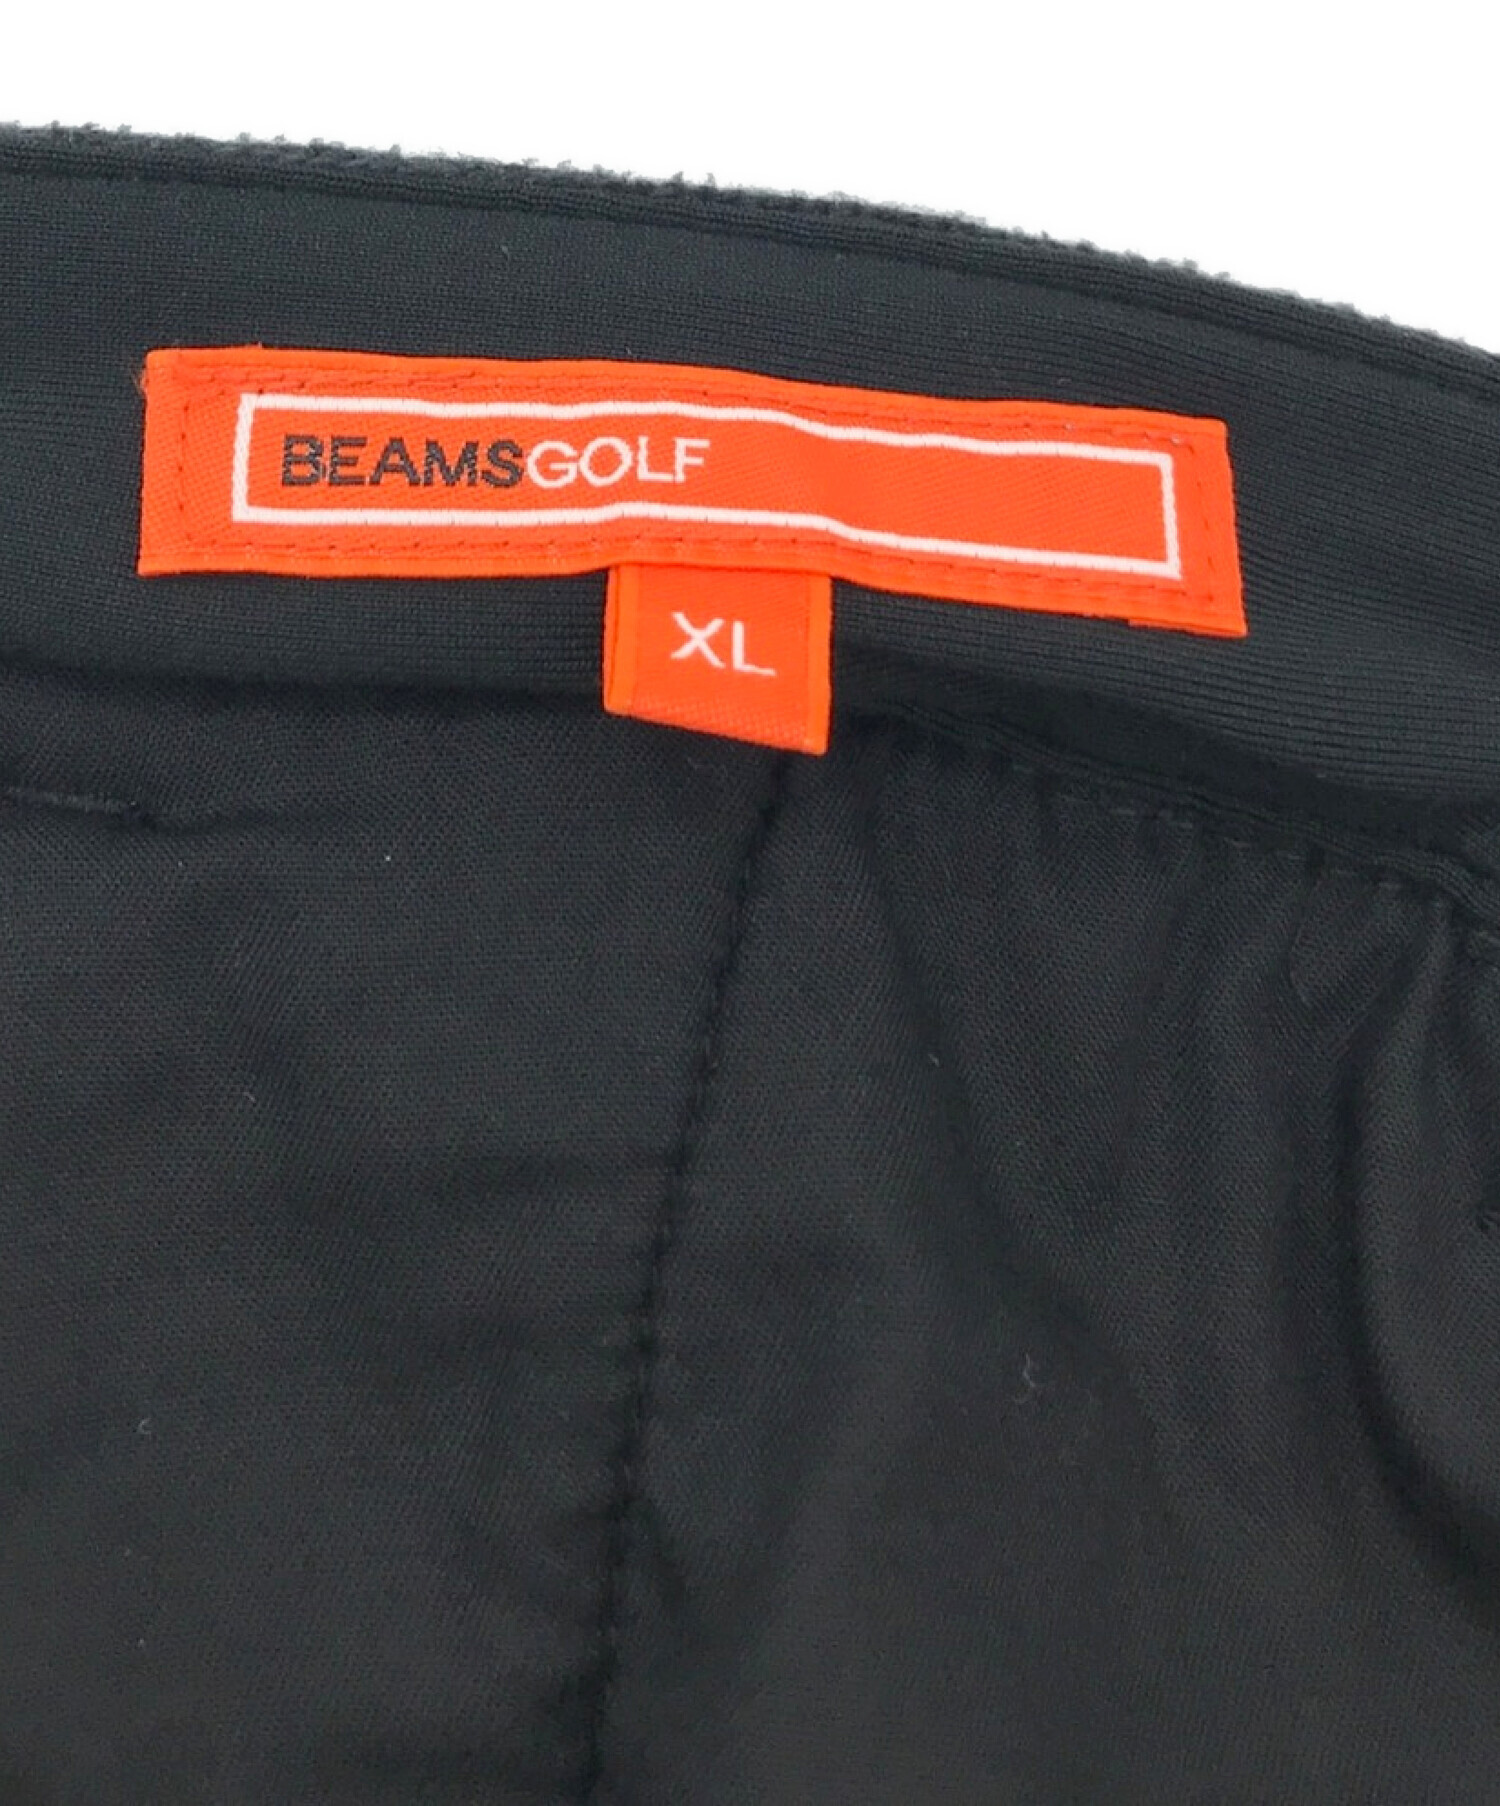 BEAMS GOLF (ビームスゴルフ) サイドロゴ ジップポケット パンツ グレー サイズ:XL